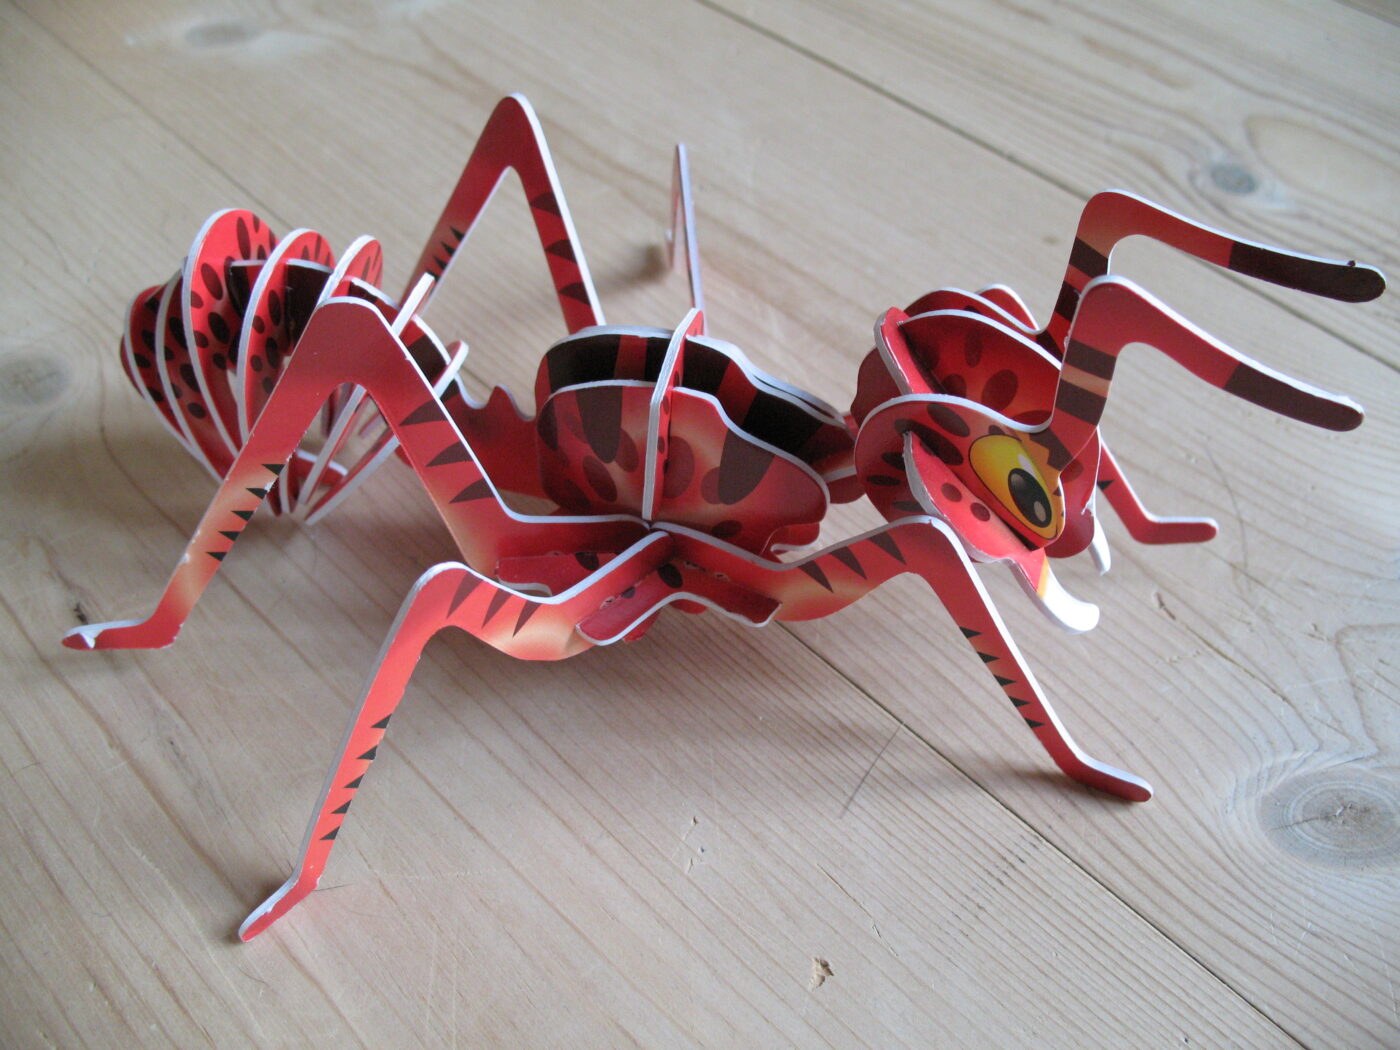 En rød myre lavet af pap.